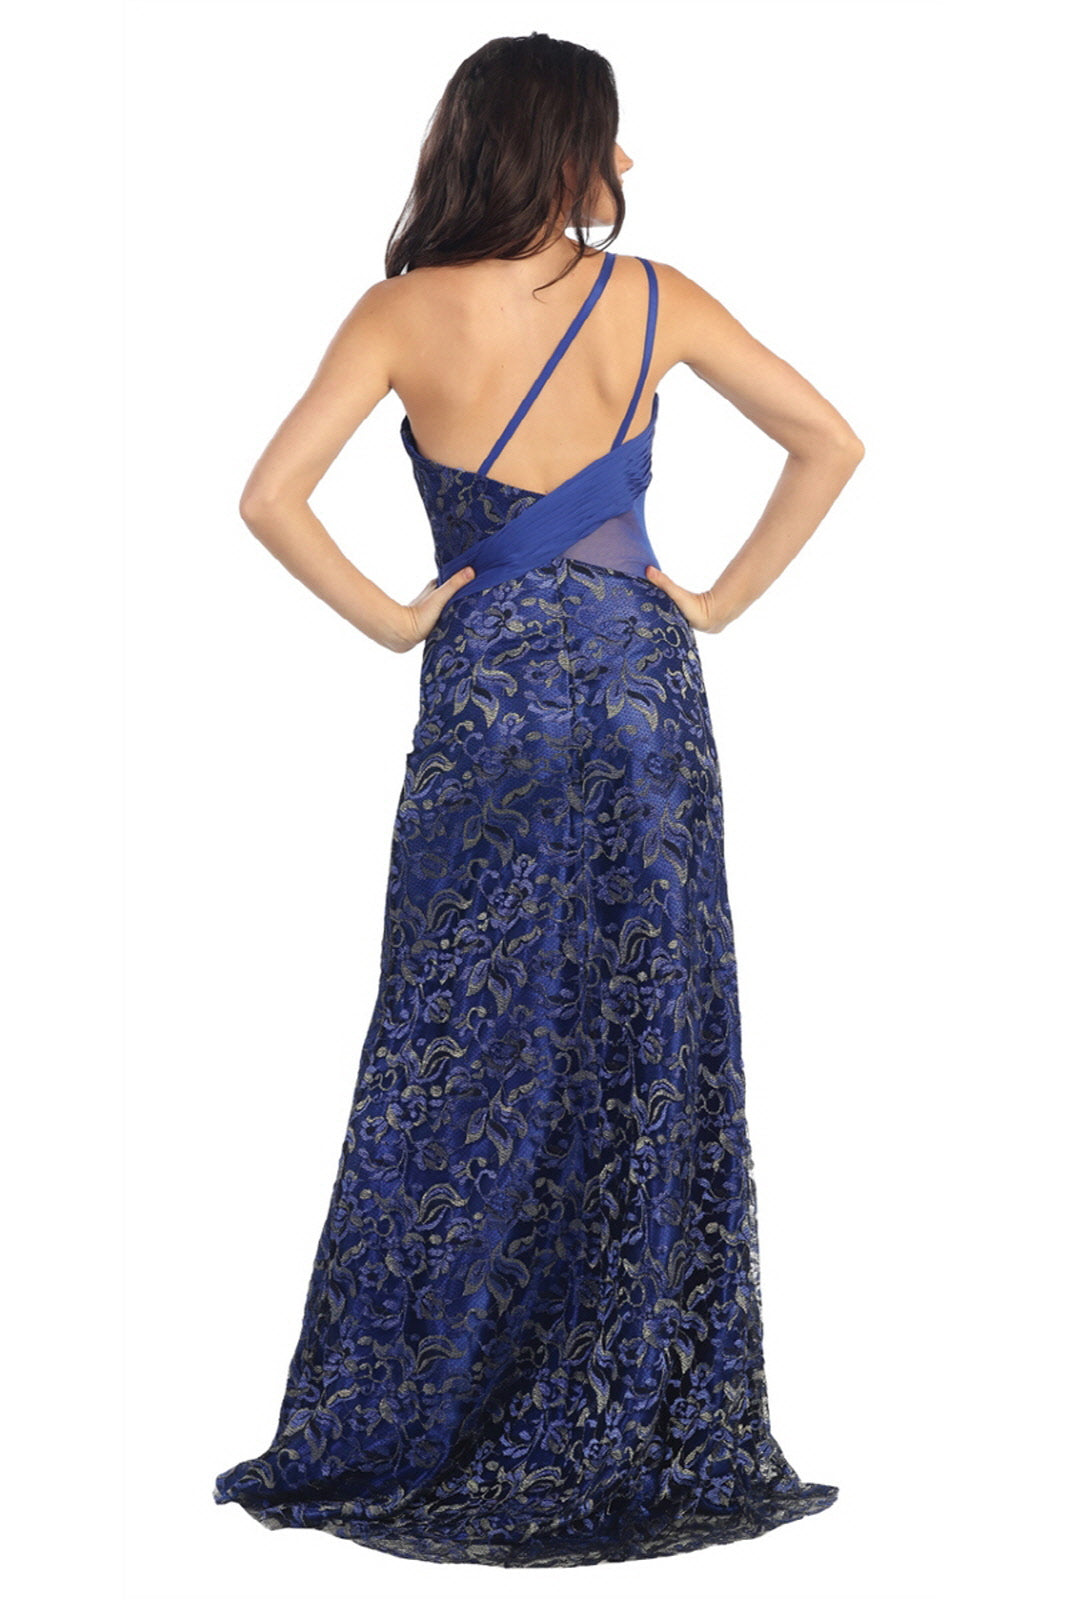 Long Prom One Shoulder Formal Evening Gown - The Dress Outlet Elizabeth K ROYAL BLUE